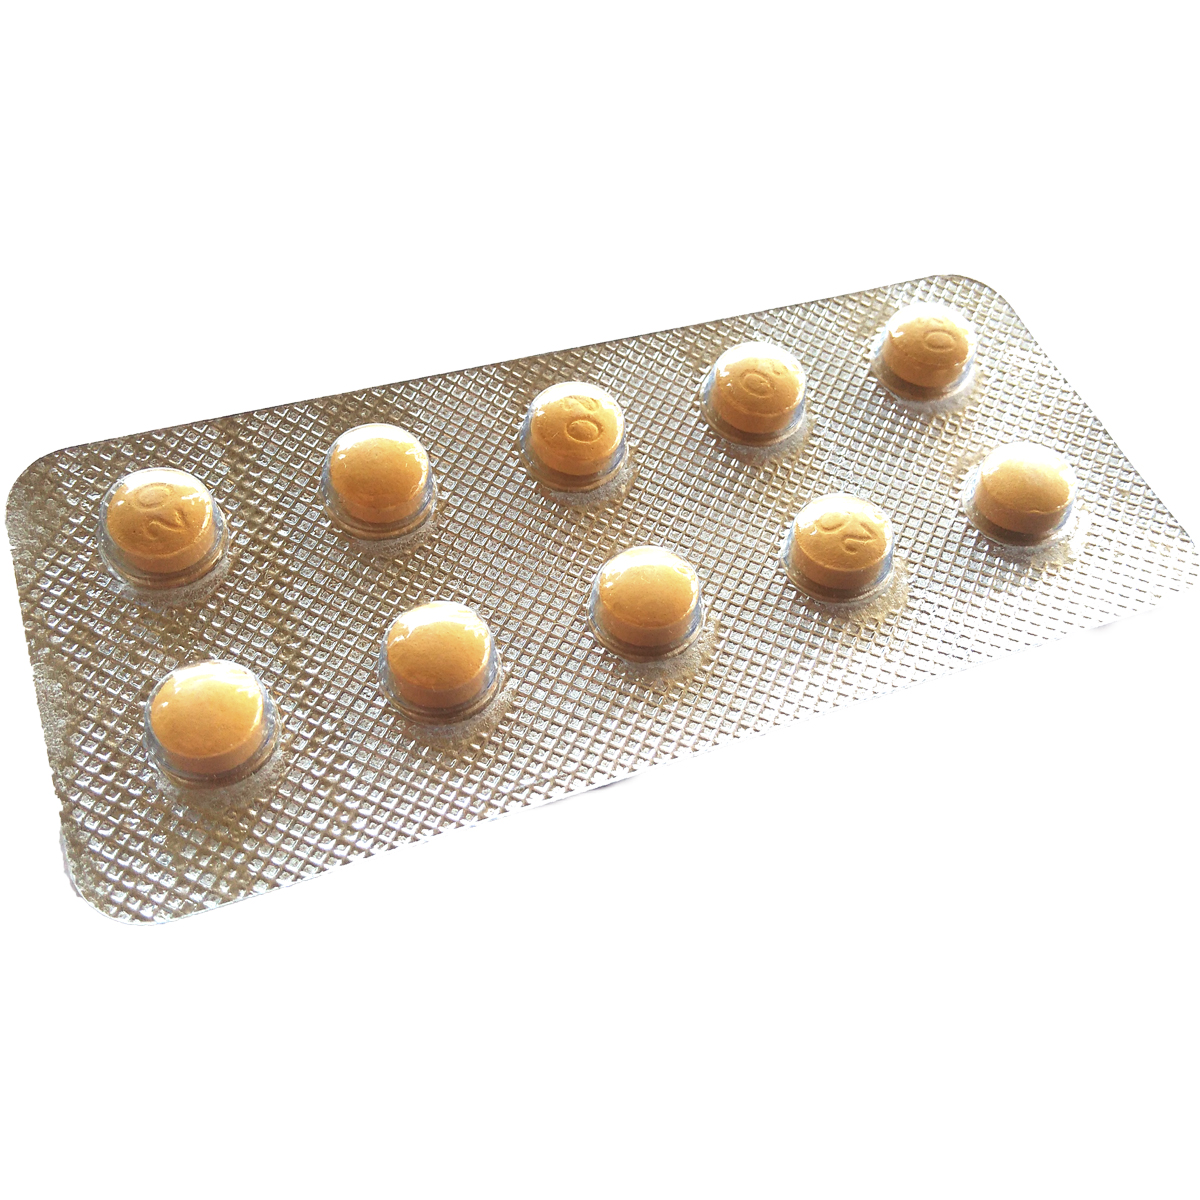 Варденафил (vardenafil): цена в аптеках, показания и инструкция по применению